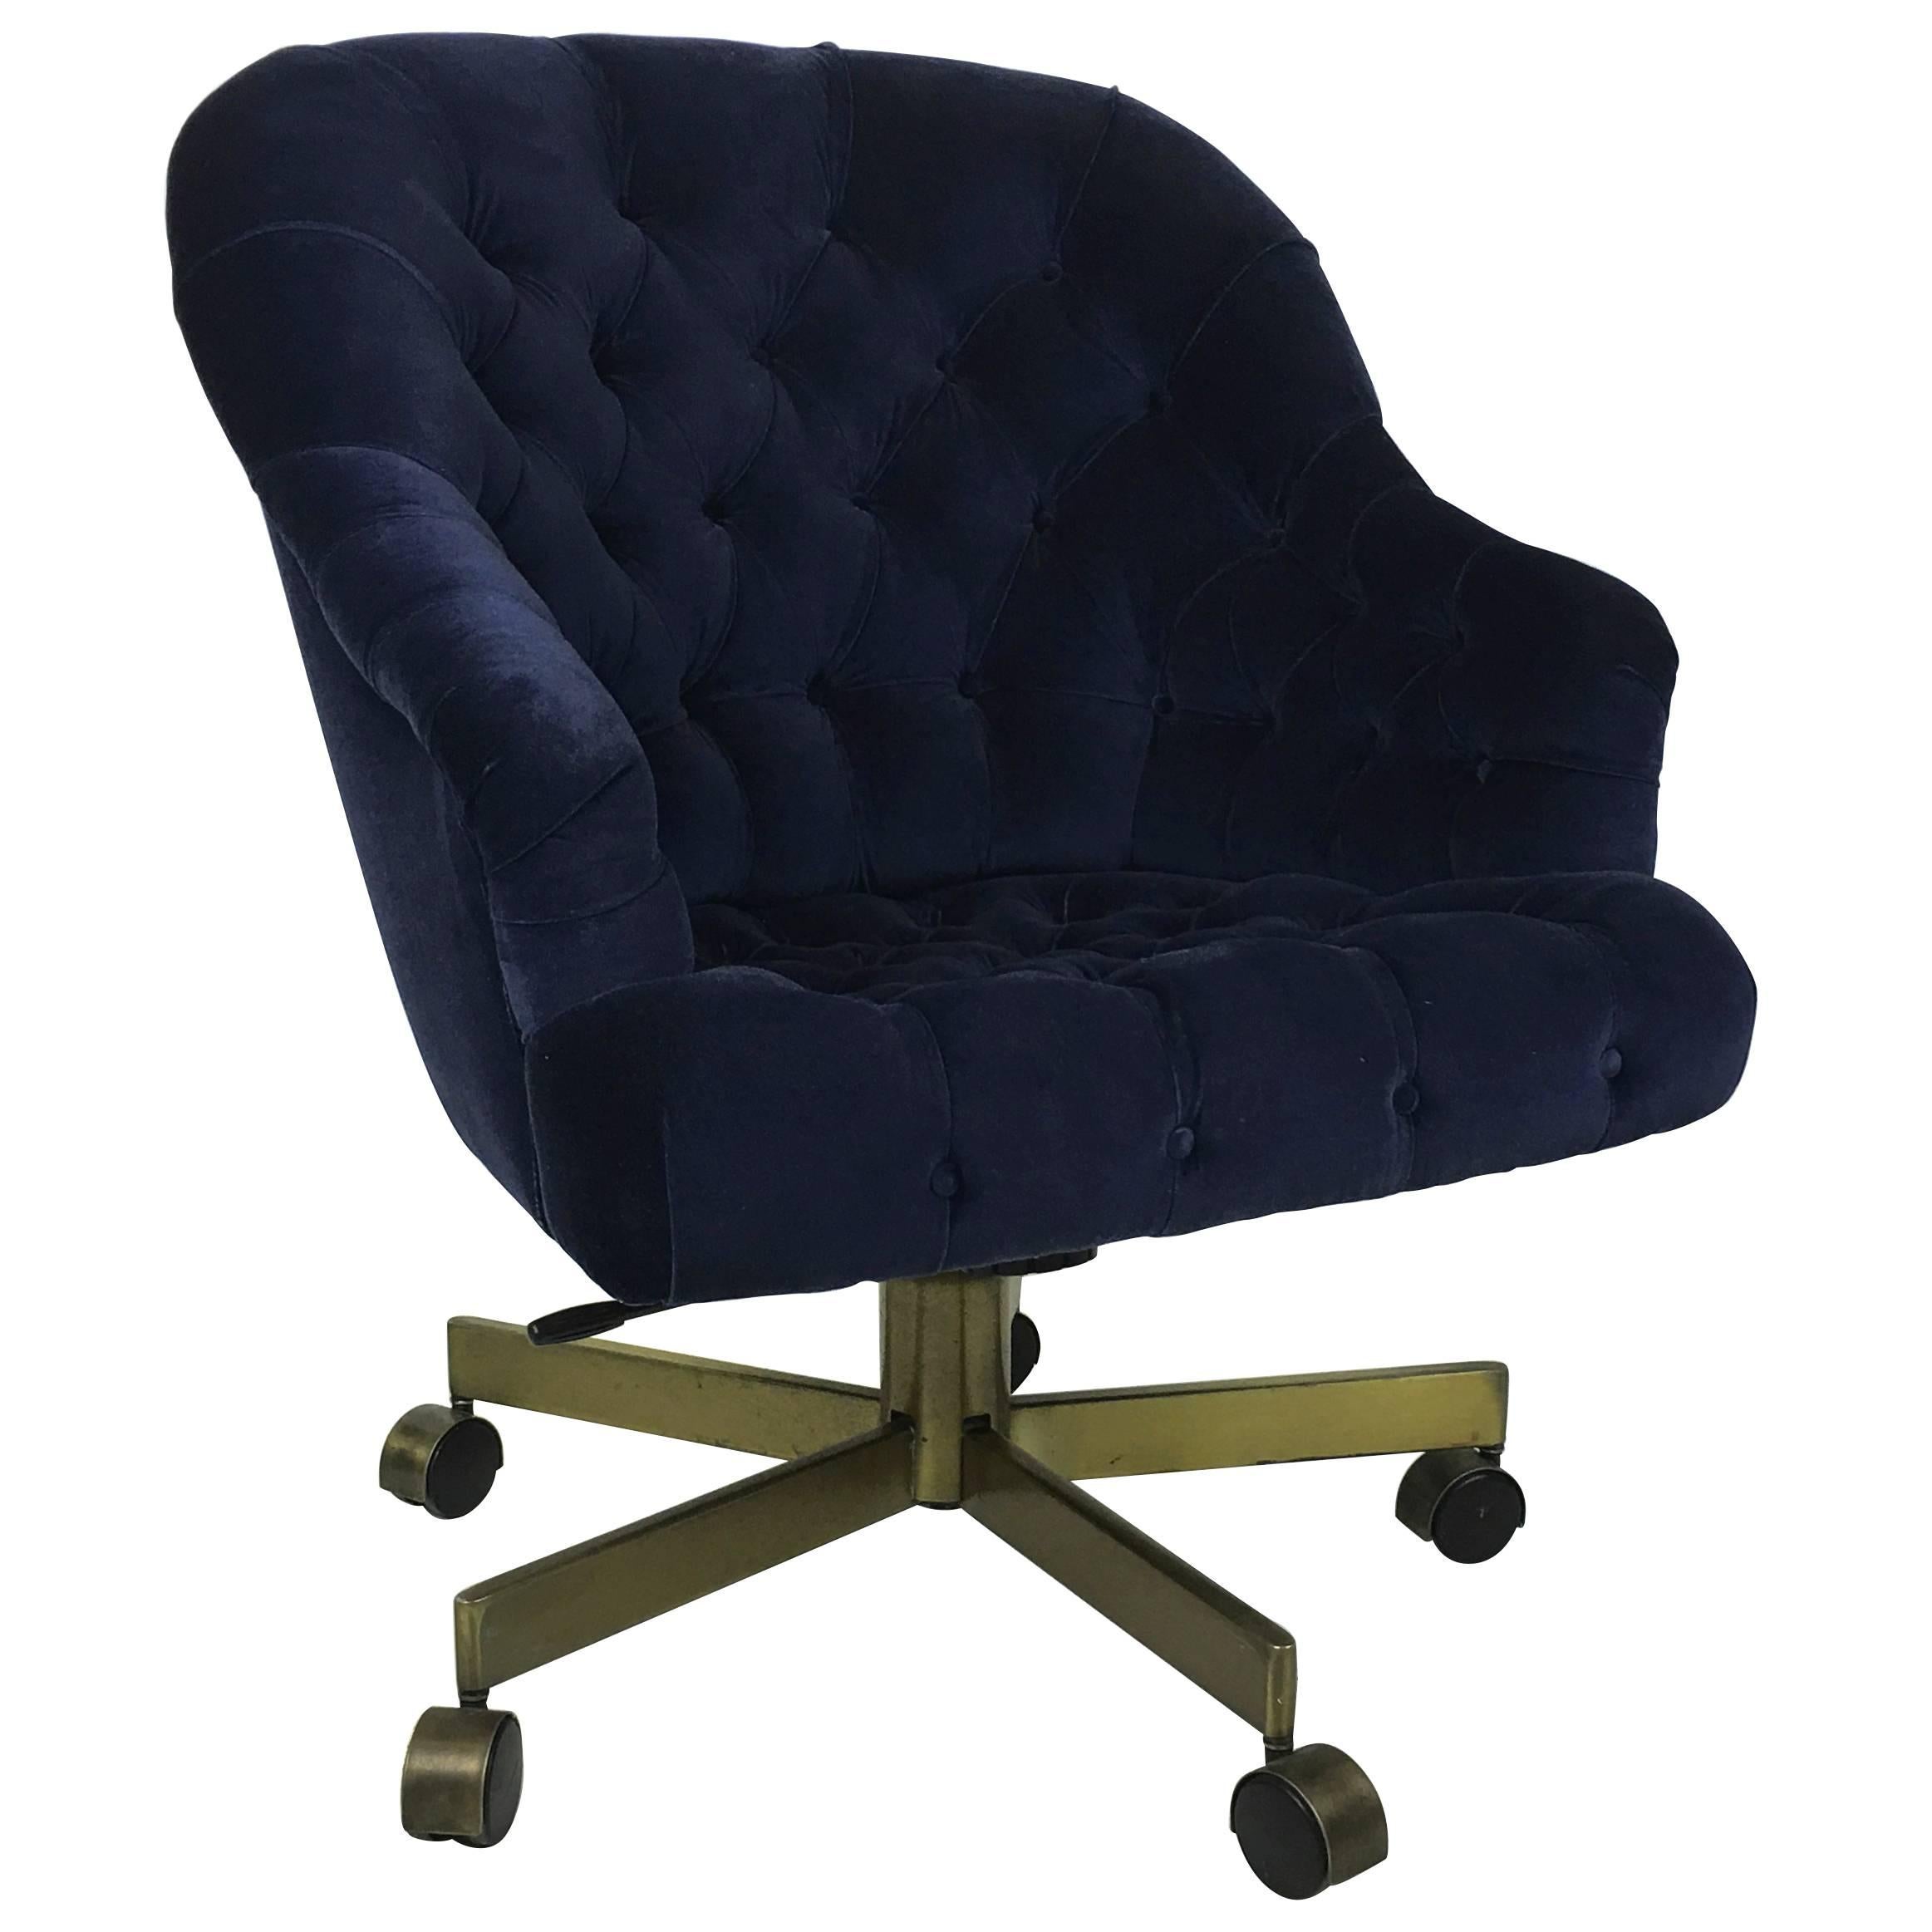 Tufted Velvet Executive Swivel Desk Chair by Edward Wormley for Dunbar